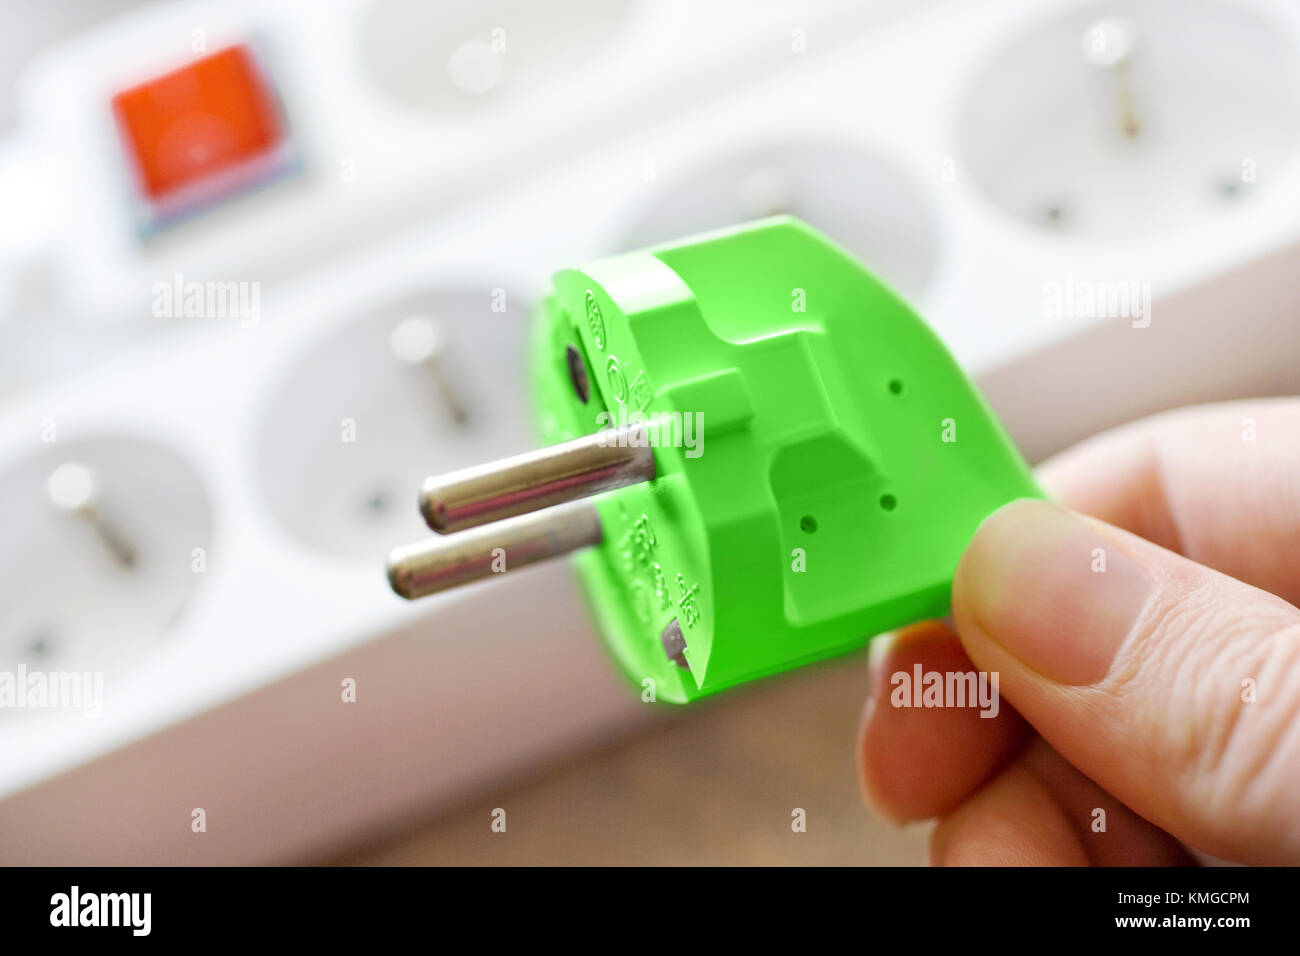 Zelená Energie - Energie - eine zásuvka elektrická zástrčka - energetický štítek Stockfoto